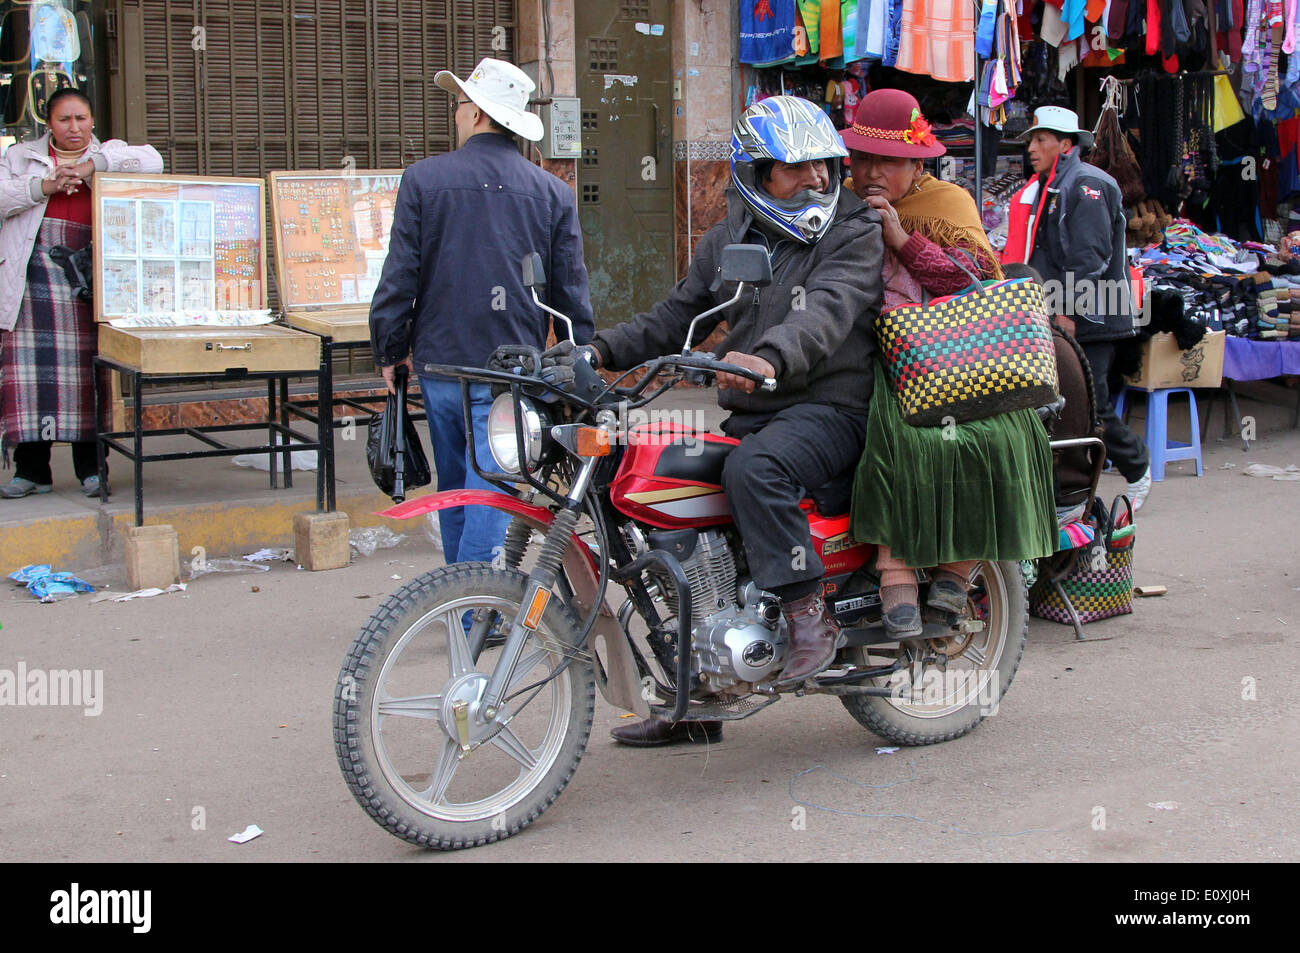 Puno, Perú. El 13 de mayo de 2014. Las personas viajar en moto por la ciudad de Juliaca, Perú, 13 de mayo de 2014. El Lago Titicaca y sus islas flotantes en el Perú, la región Puno no sólo los atractivos naturales, sino también porque la cultura única del pueblo quechua de Juliaca que viven allí. El lago Titicaca se encuentra en la Meseta de Collao, con las islas de Luna, Taquile, Uros, Amantani y Suriqui en ella. © Luis Camacho/Xinhua/Alamy Live News Foto de stock